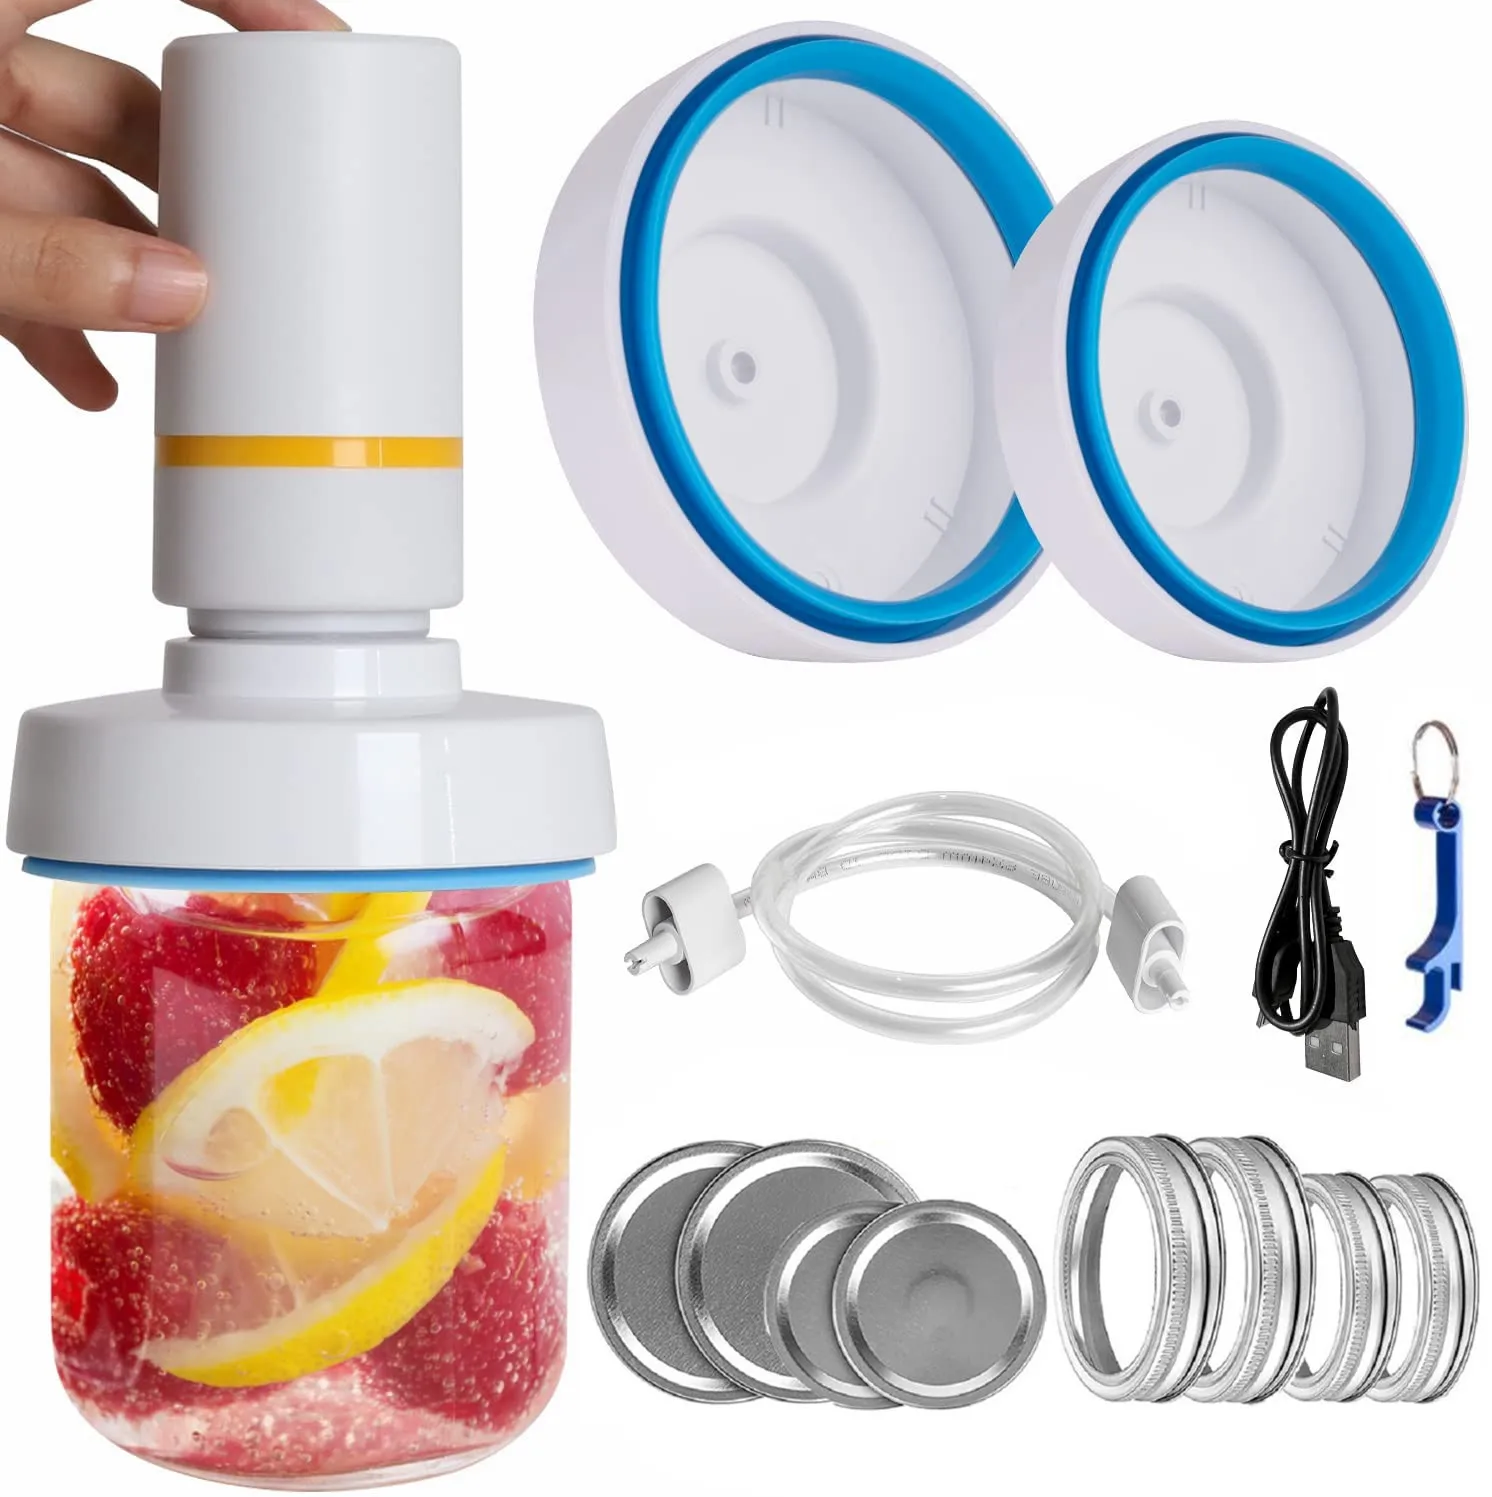 

Accessori Bag Cucina Kit Sealer Mini Sealer Jar Jar Strani Electric Vacuum Seal Sealer Envios Gratis Clips Clip Food